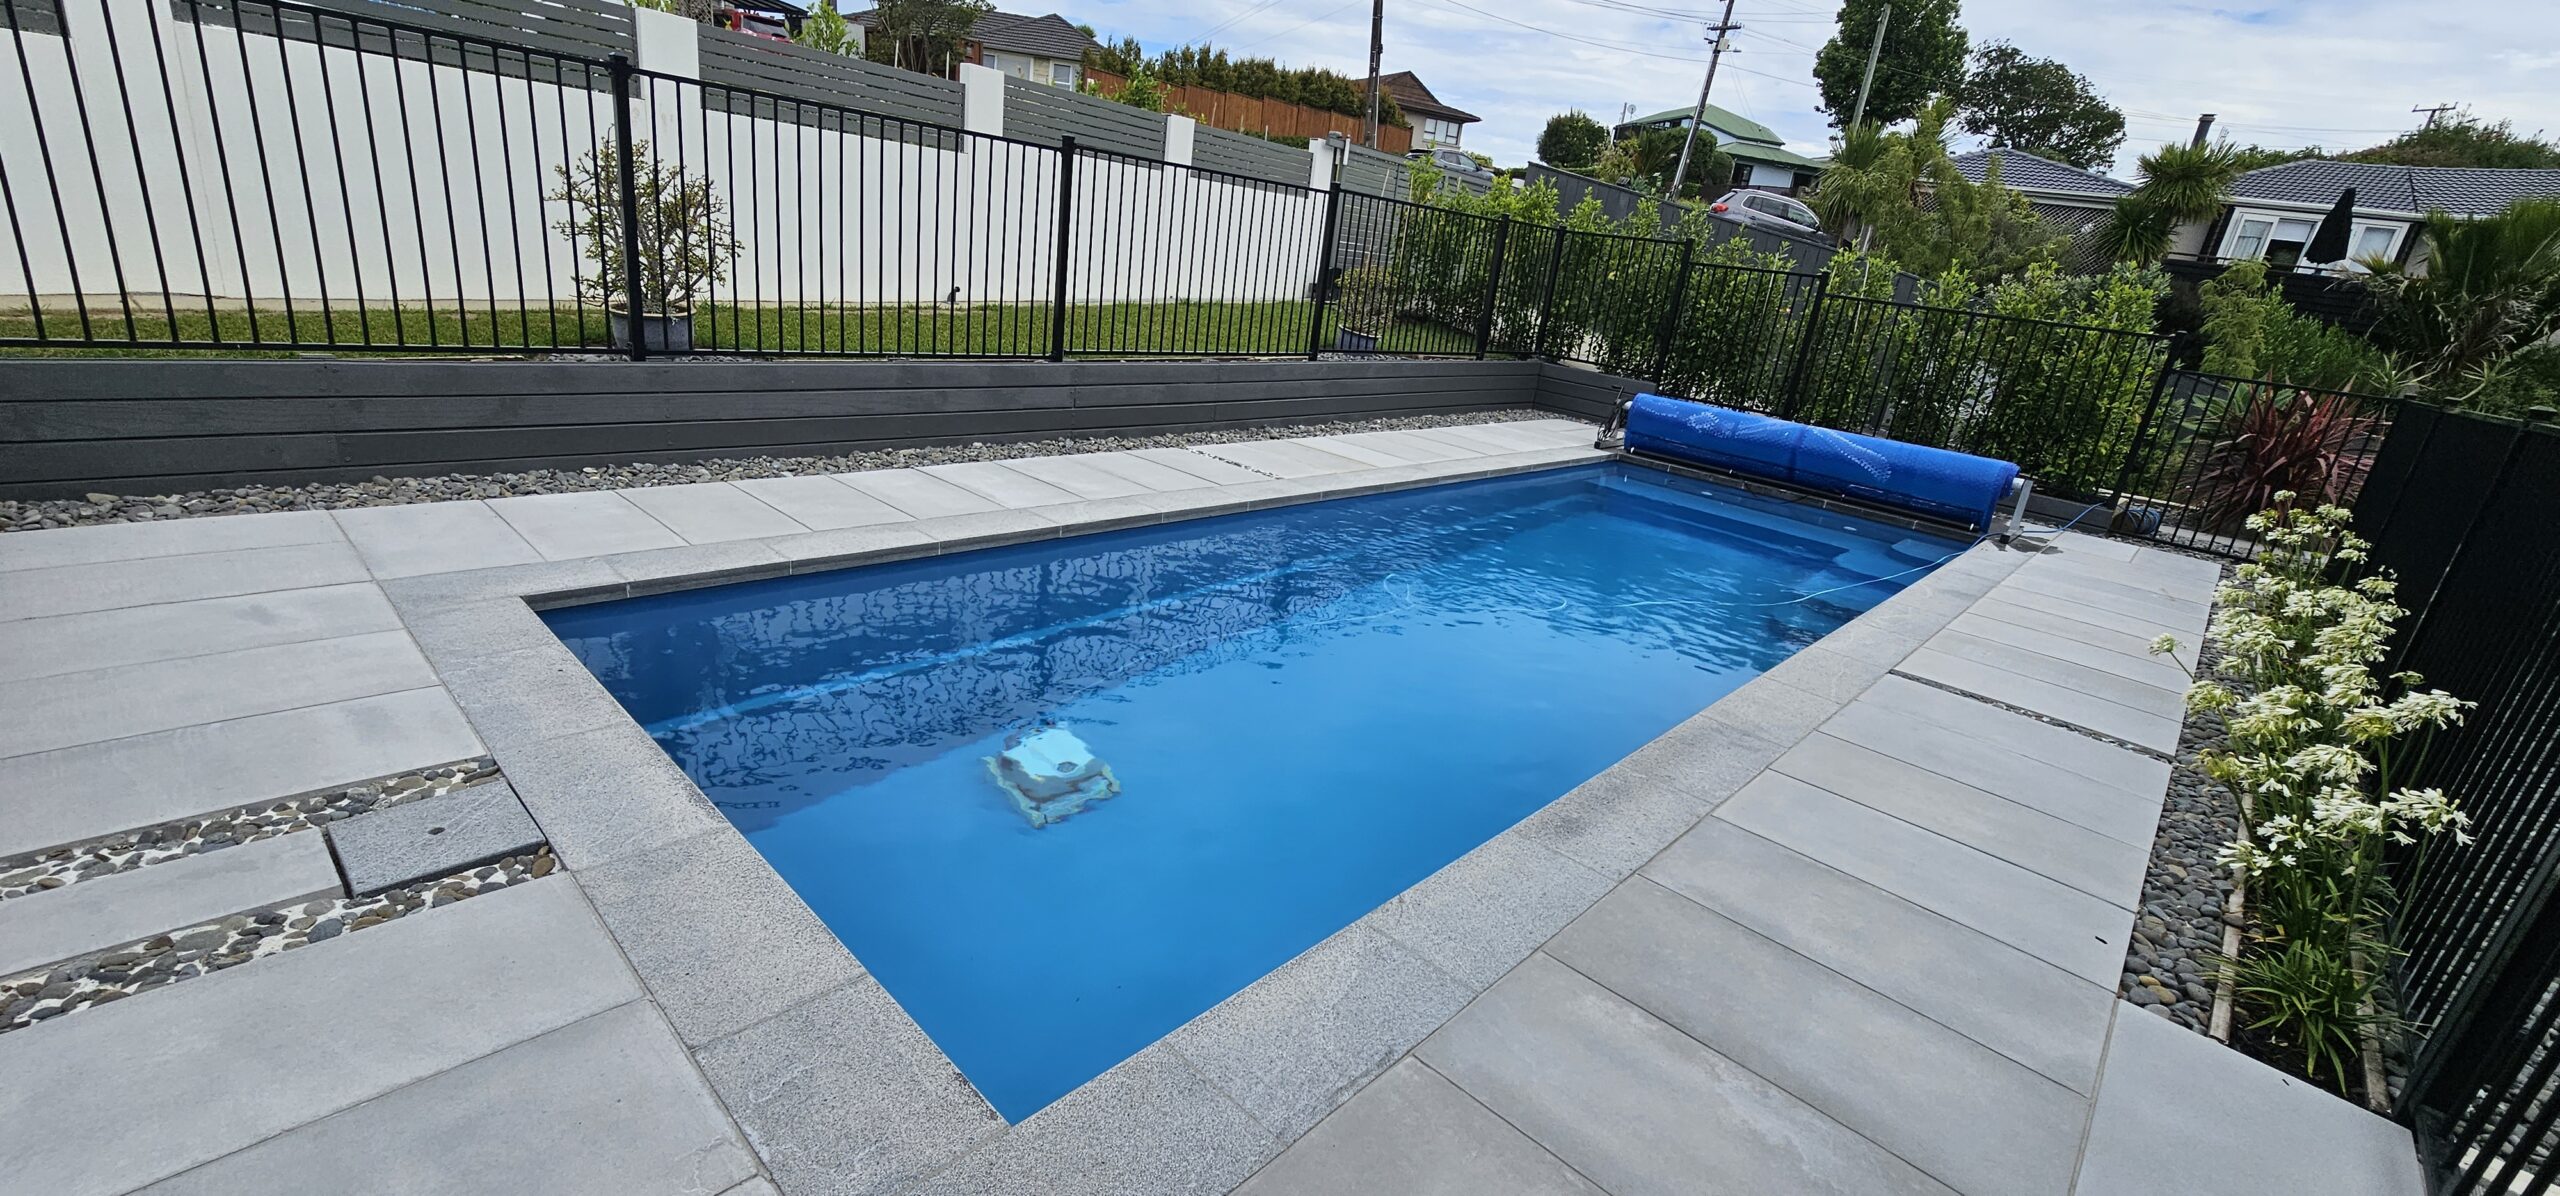 8x3 meter fibreglass swimming pool in the colour platinum